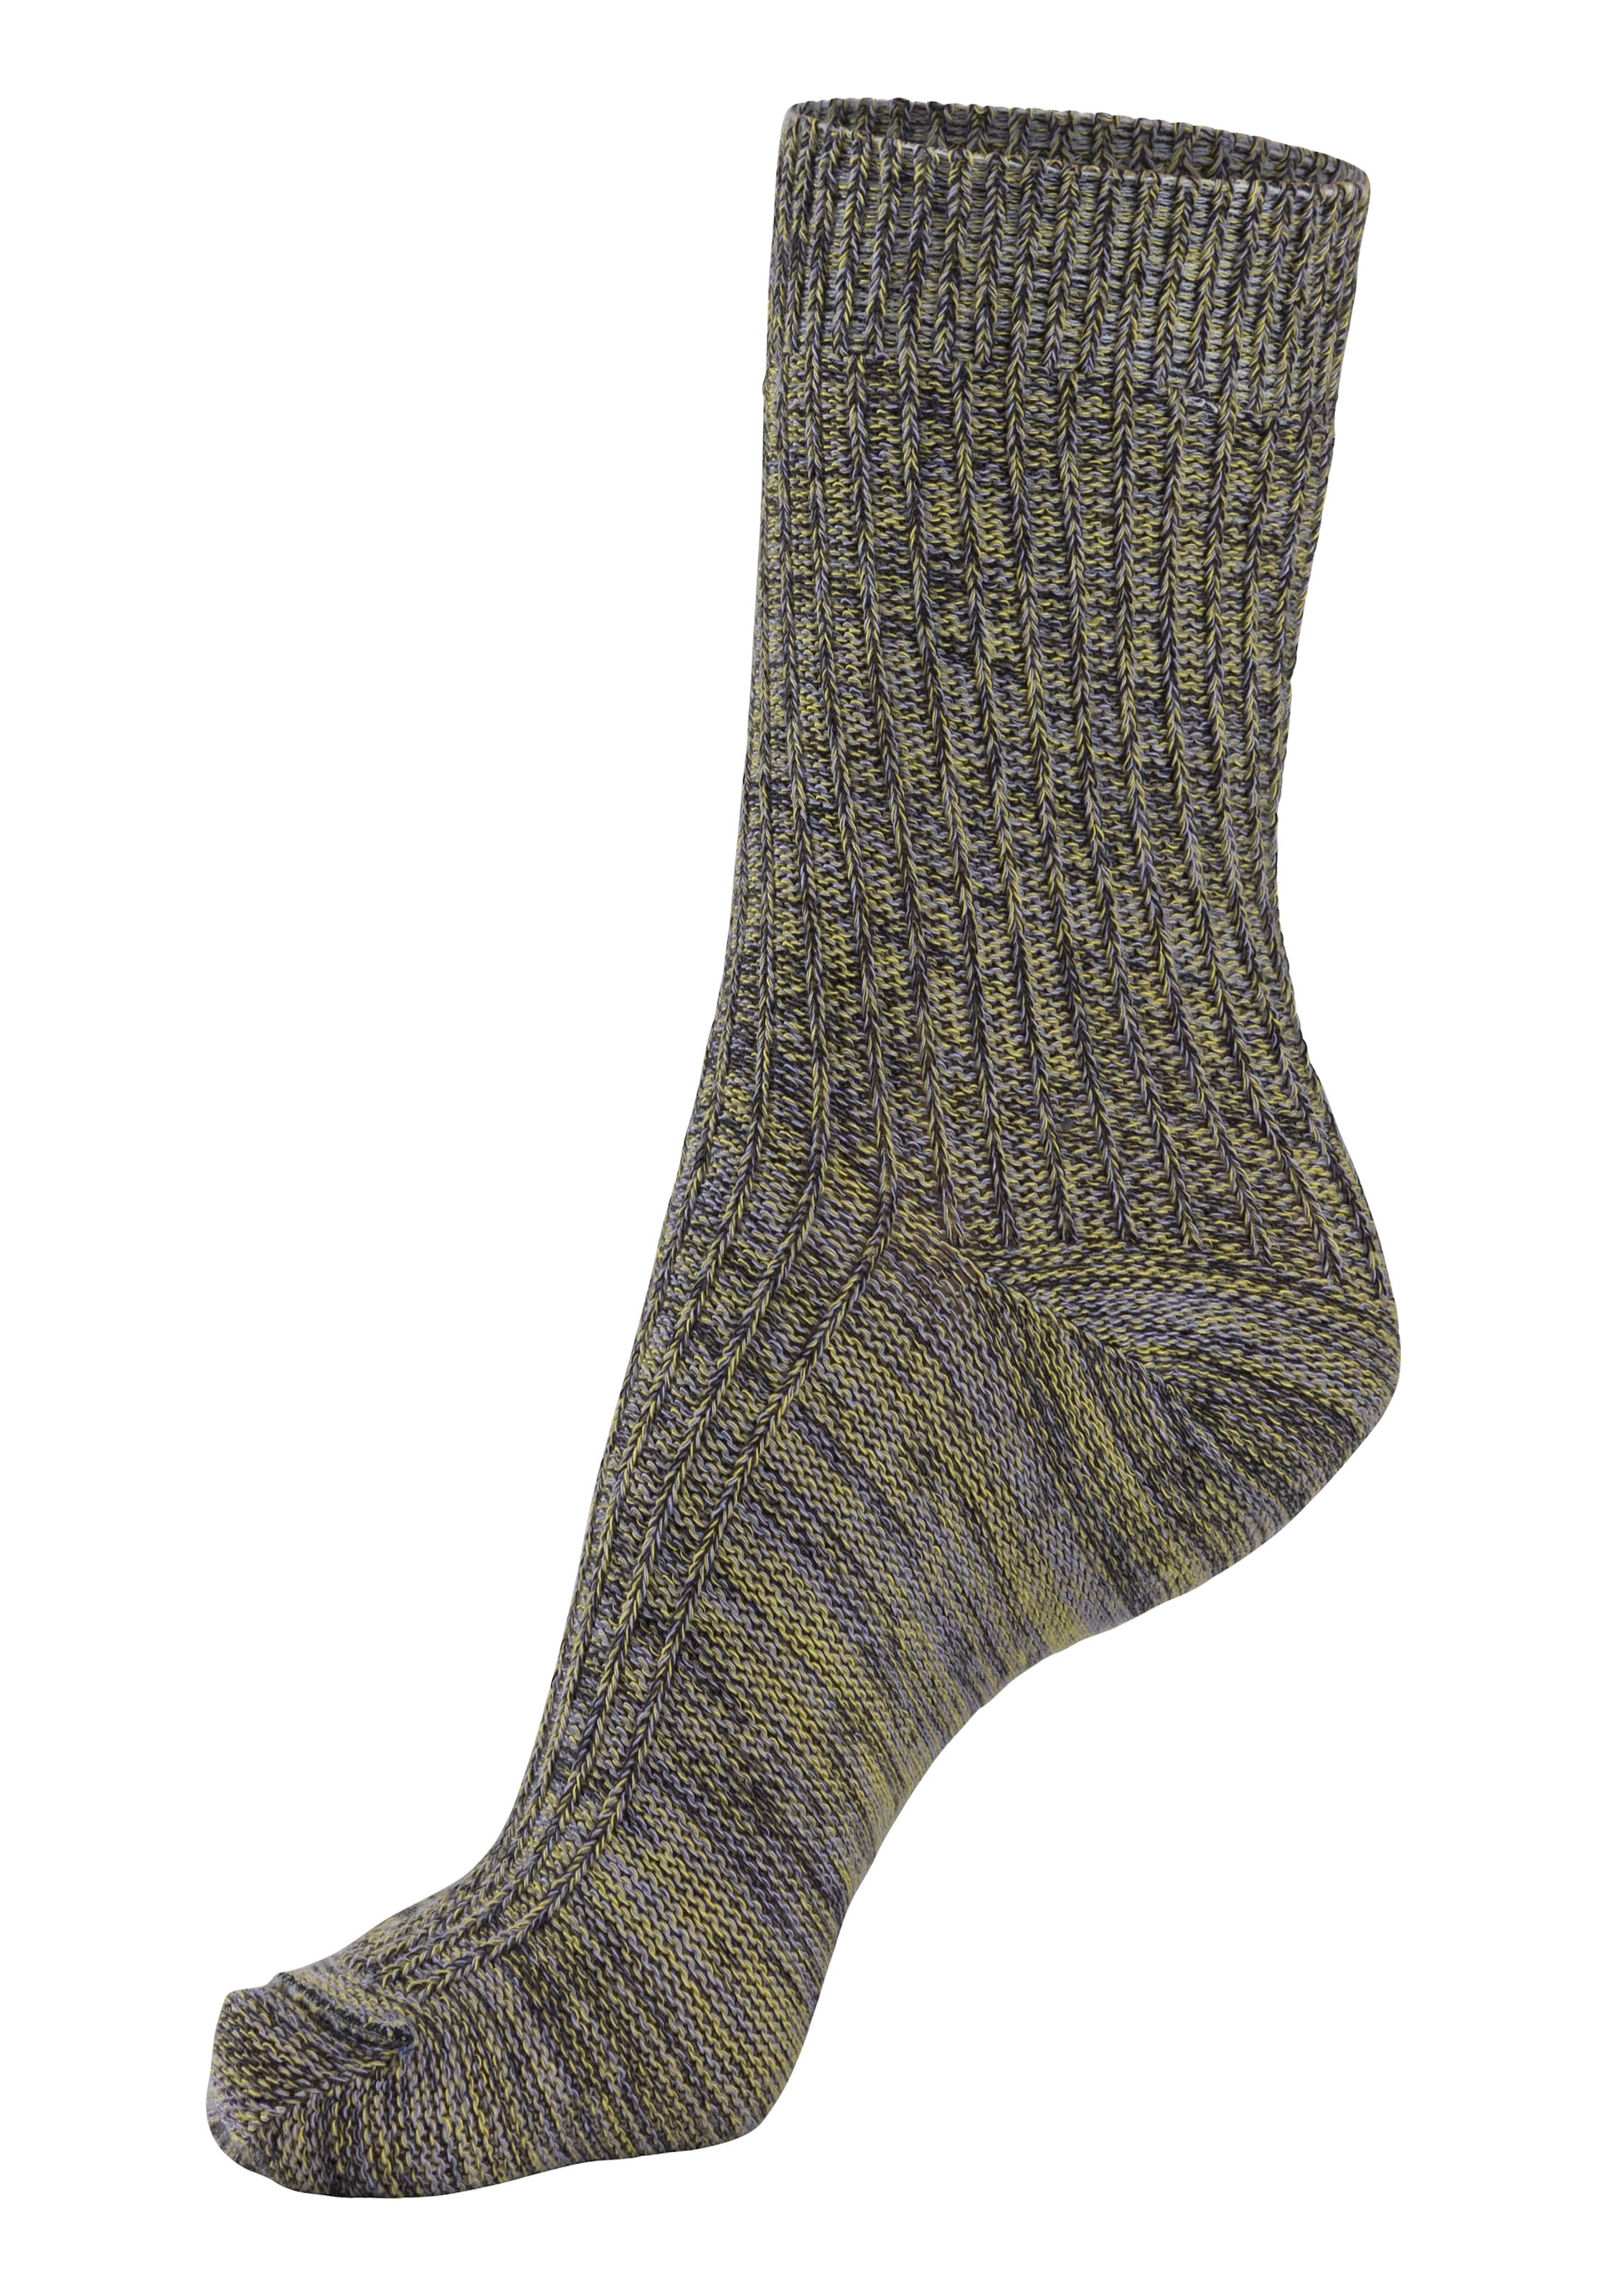 LASCANA Socken, (5 Paar), gestrickt mit farbigen Garnen